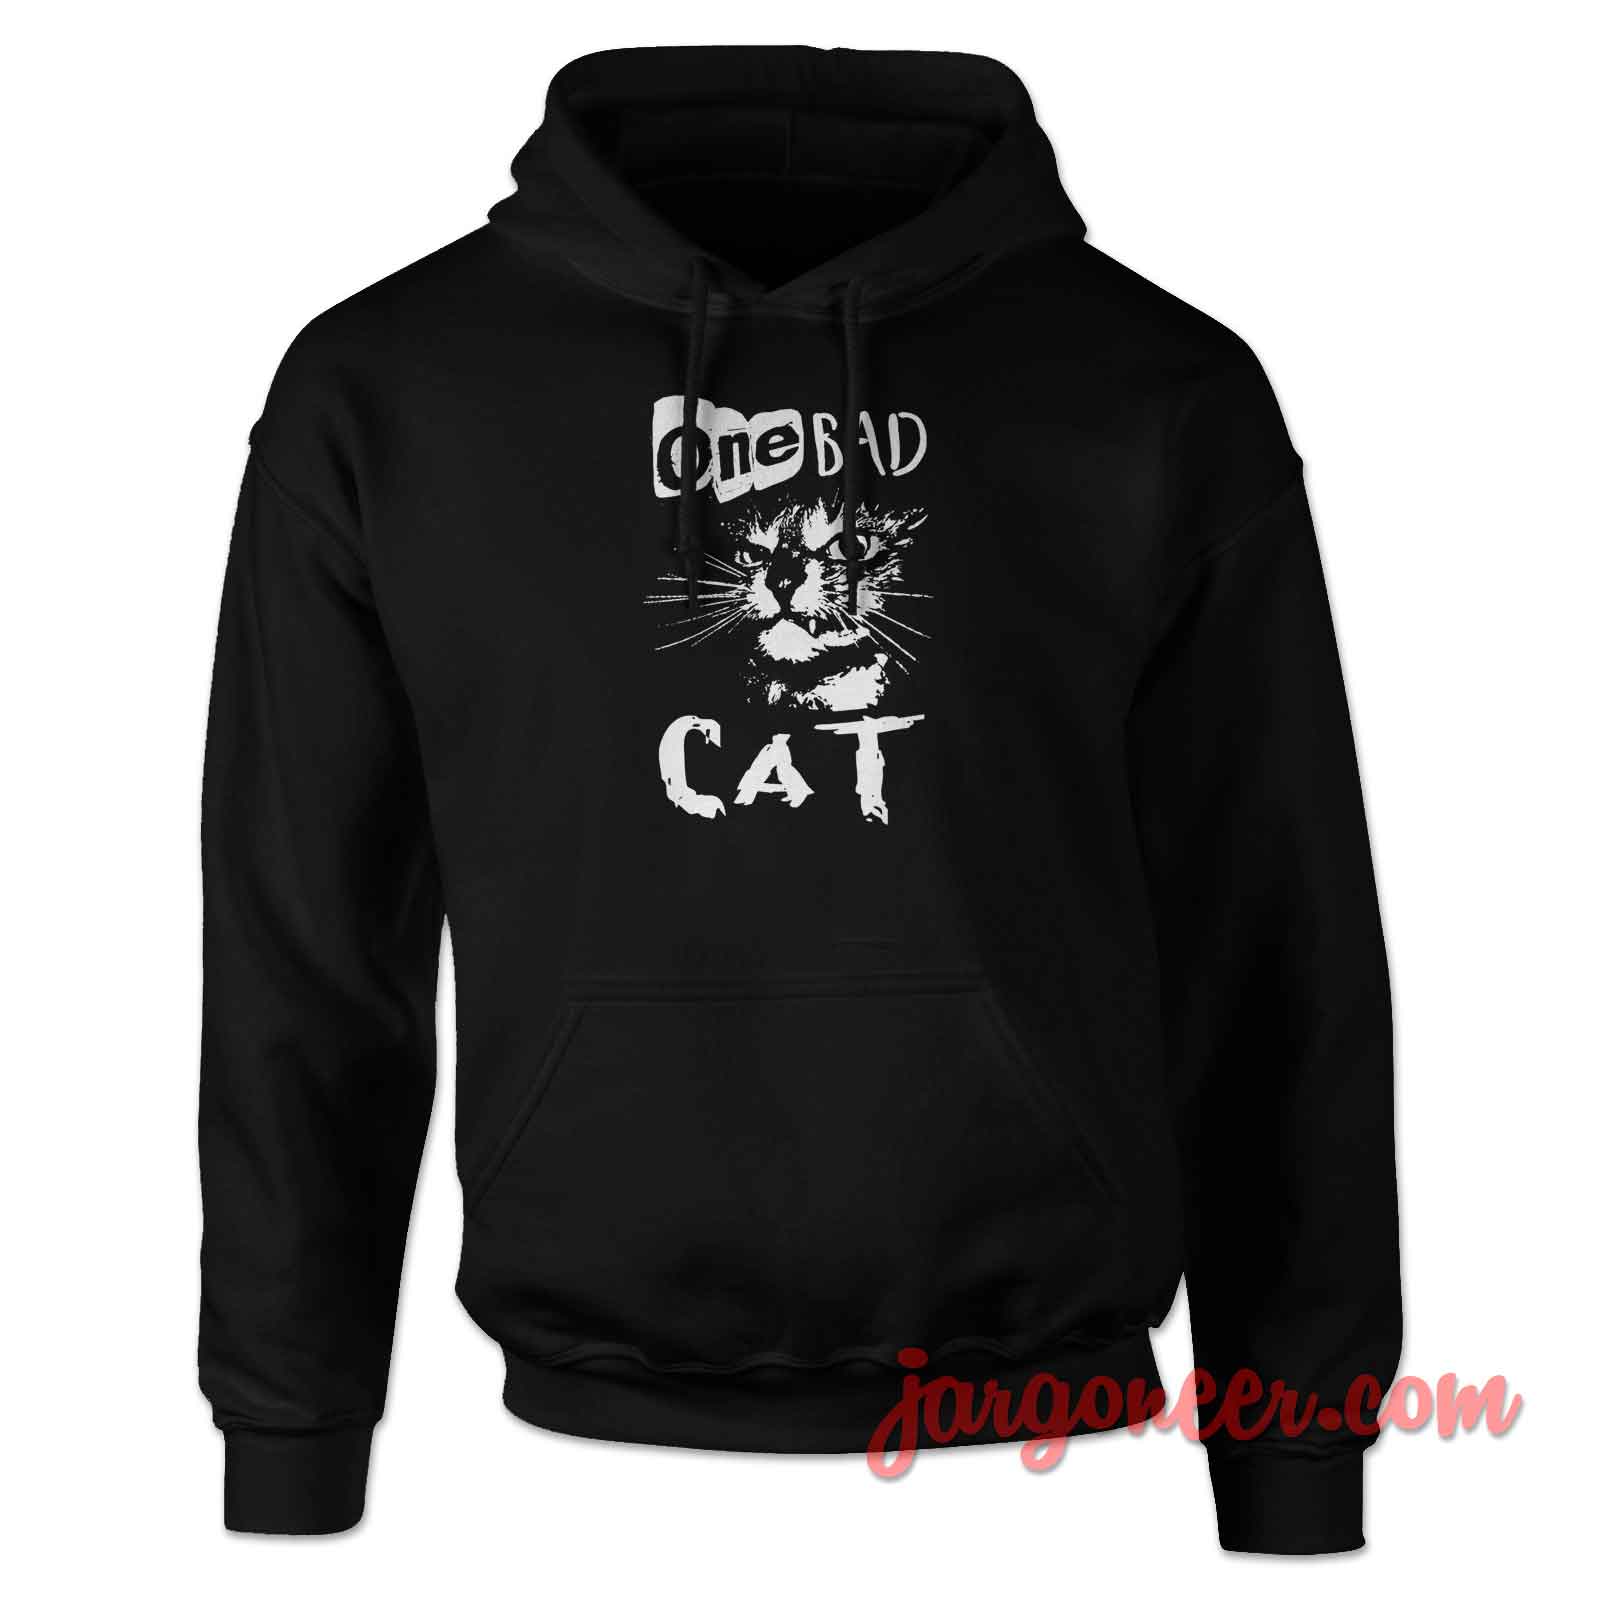 One Bad Cat Hoodie | Design Hoodie - Jargoneer.com